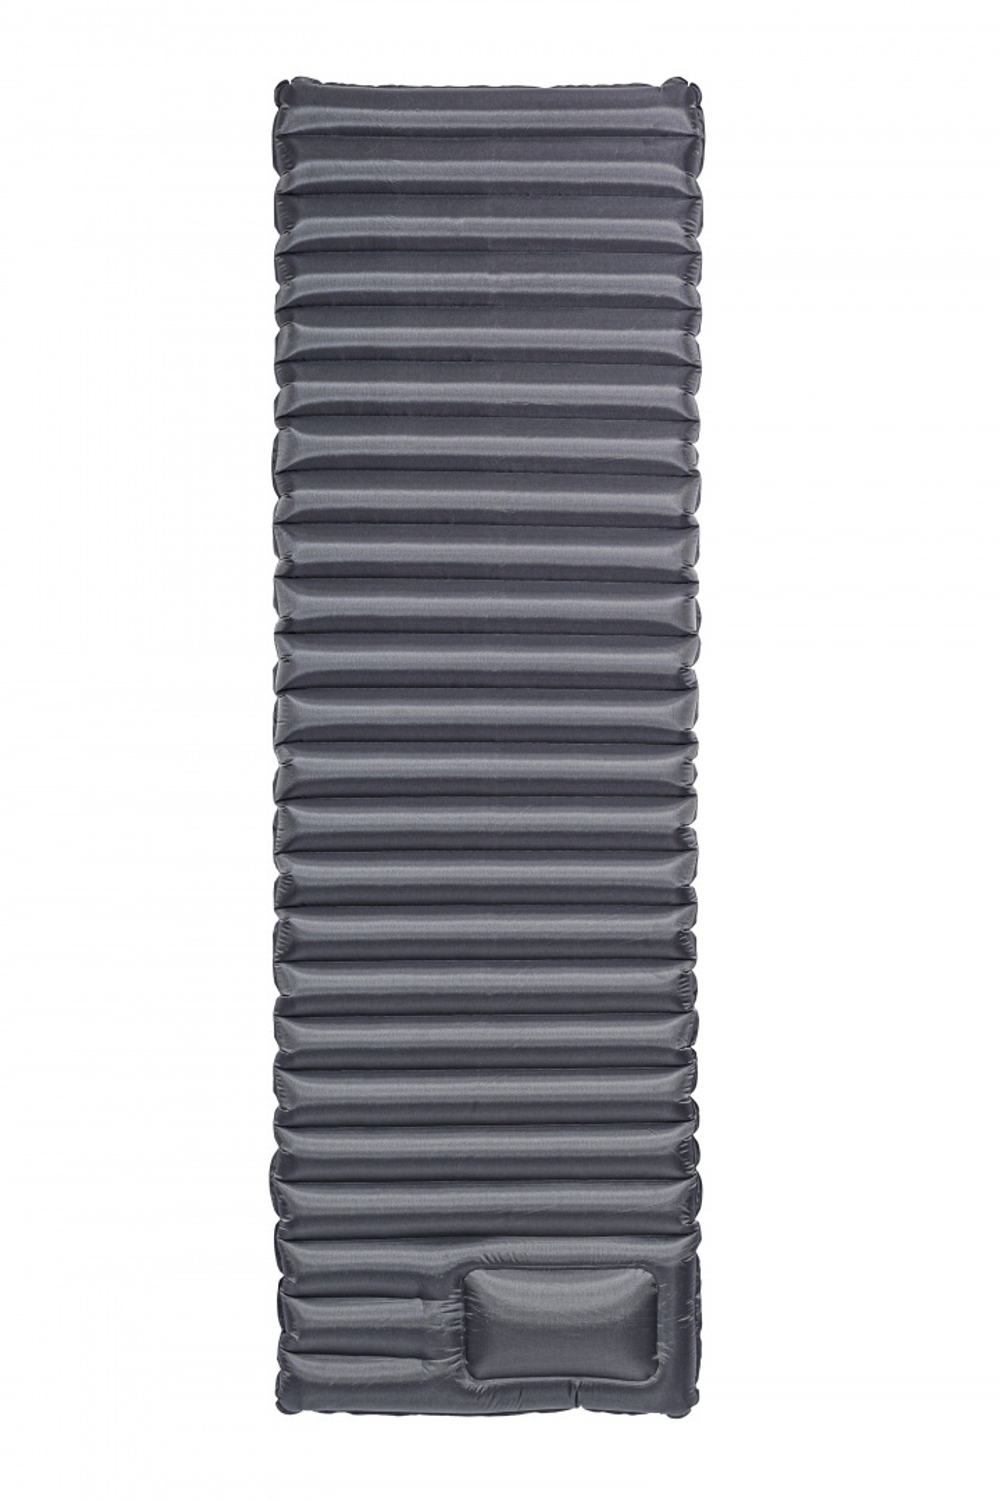 LUXOR AIR GREY MAT коврик надувной (185х60х8,оливковый)